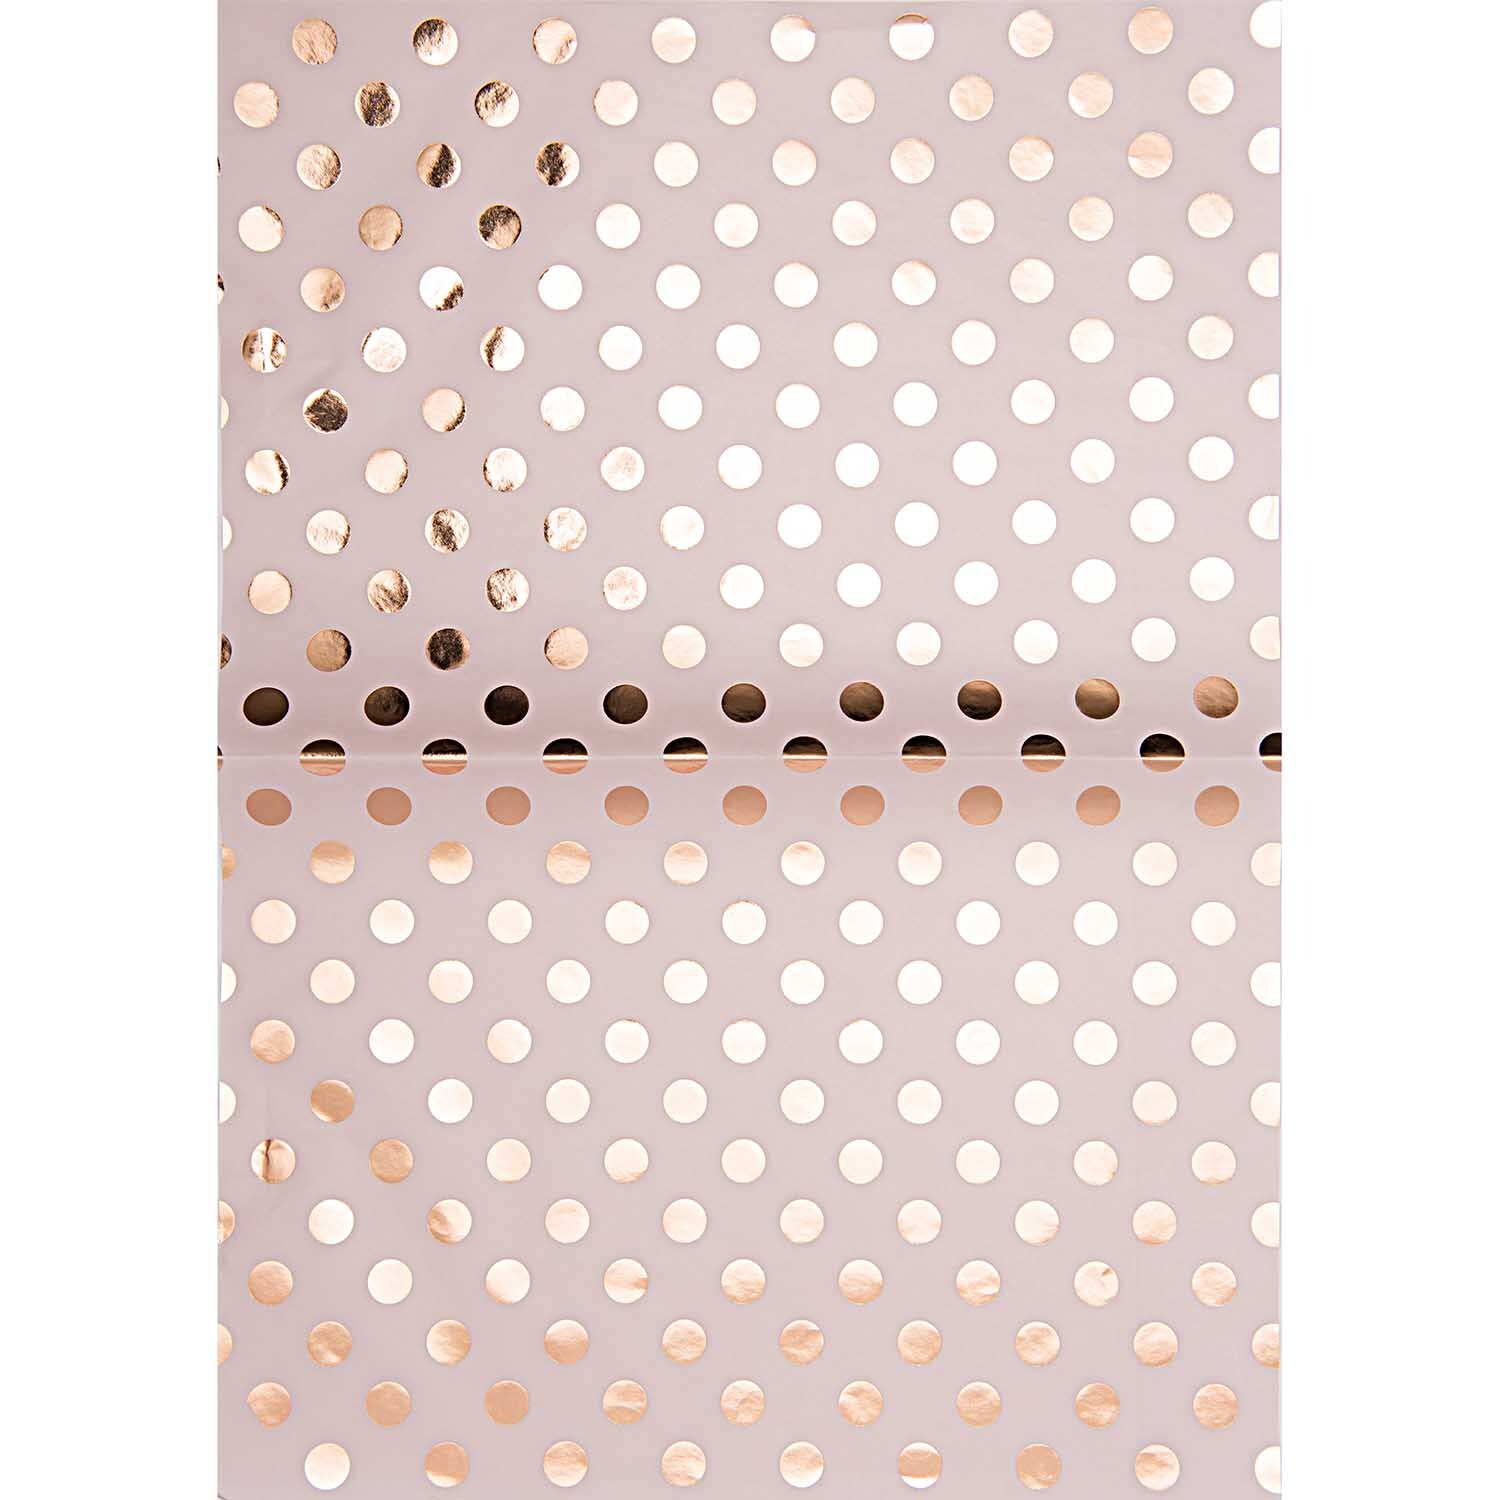 Paper Patch Papier Punkte rosa 30x42cm Hot Foil